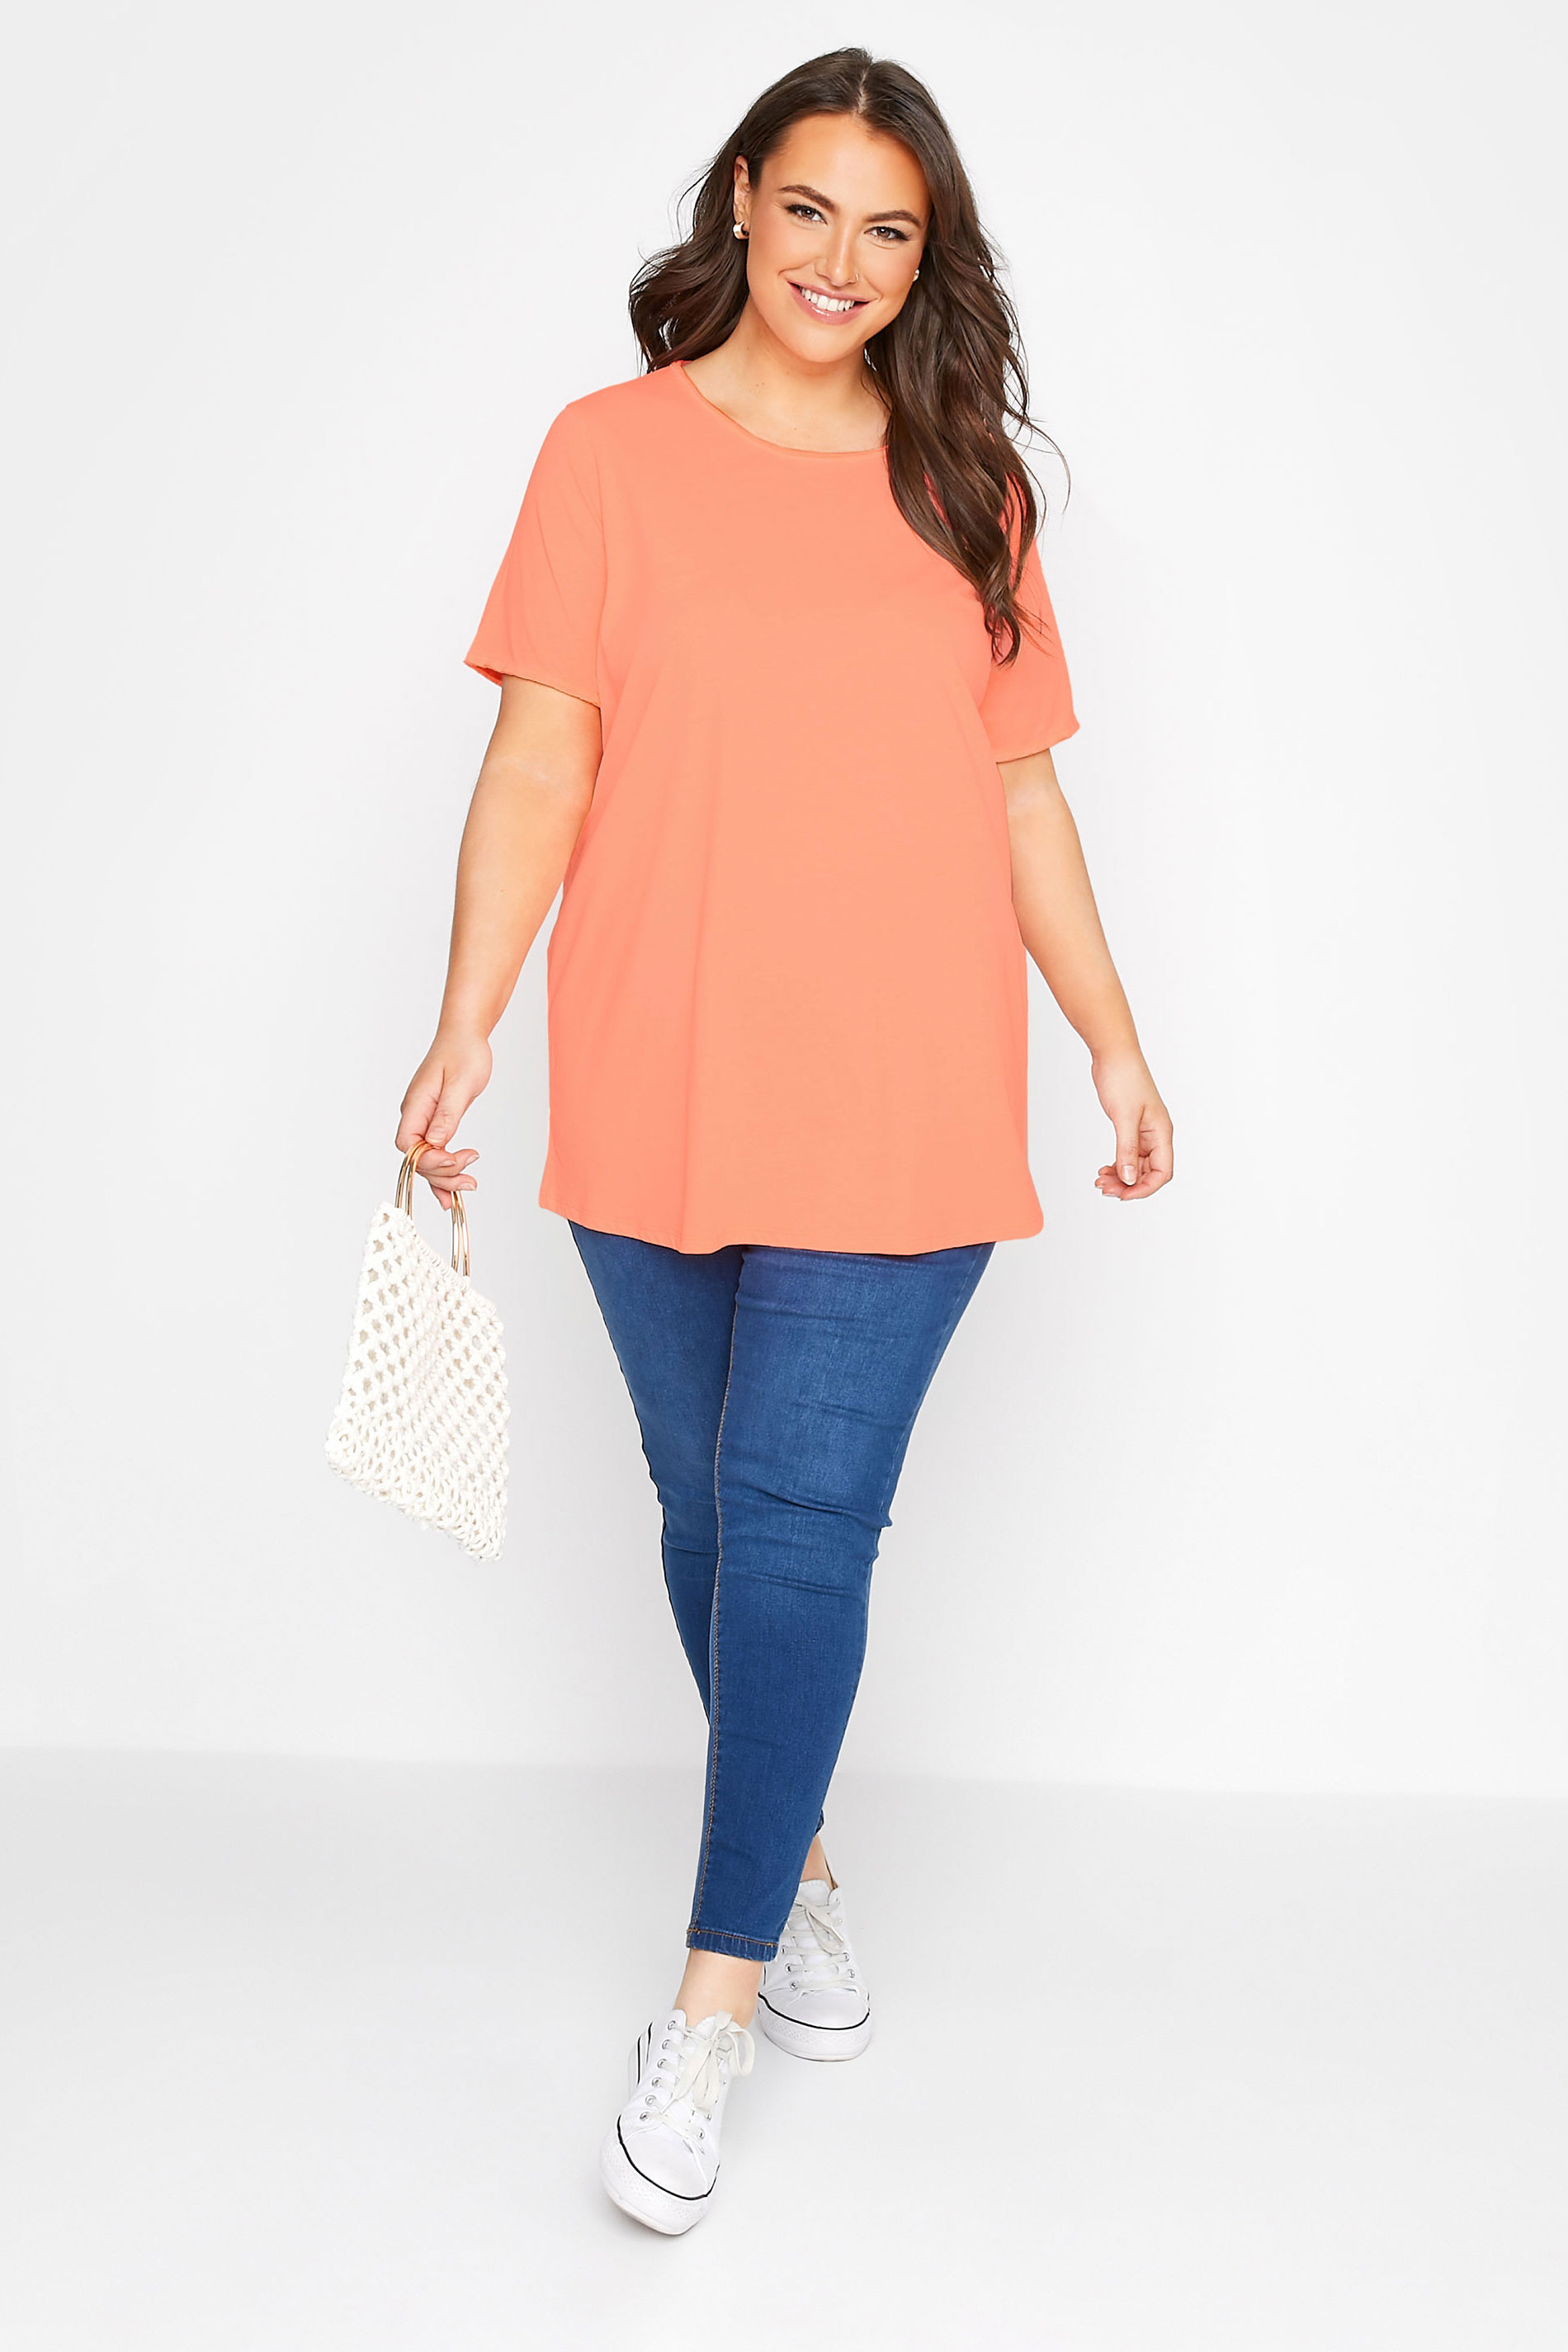 Grande taille  Tops Grande taille  T-Shirts Basiques & Débardeurs | T-Shirt Orange Basique en Jersey Manches Effilochées - VL49848